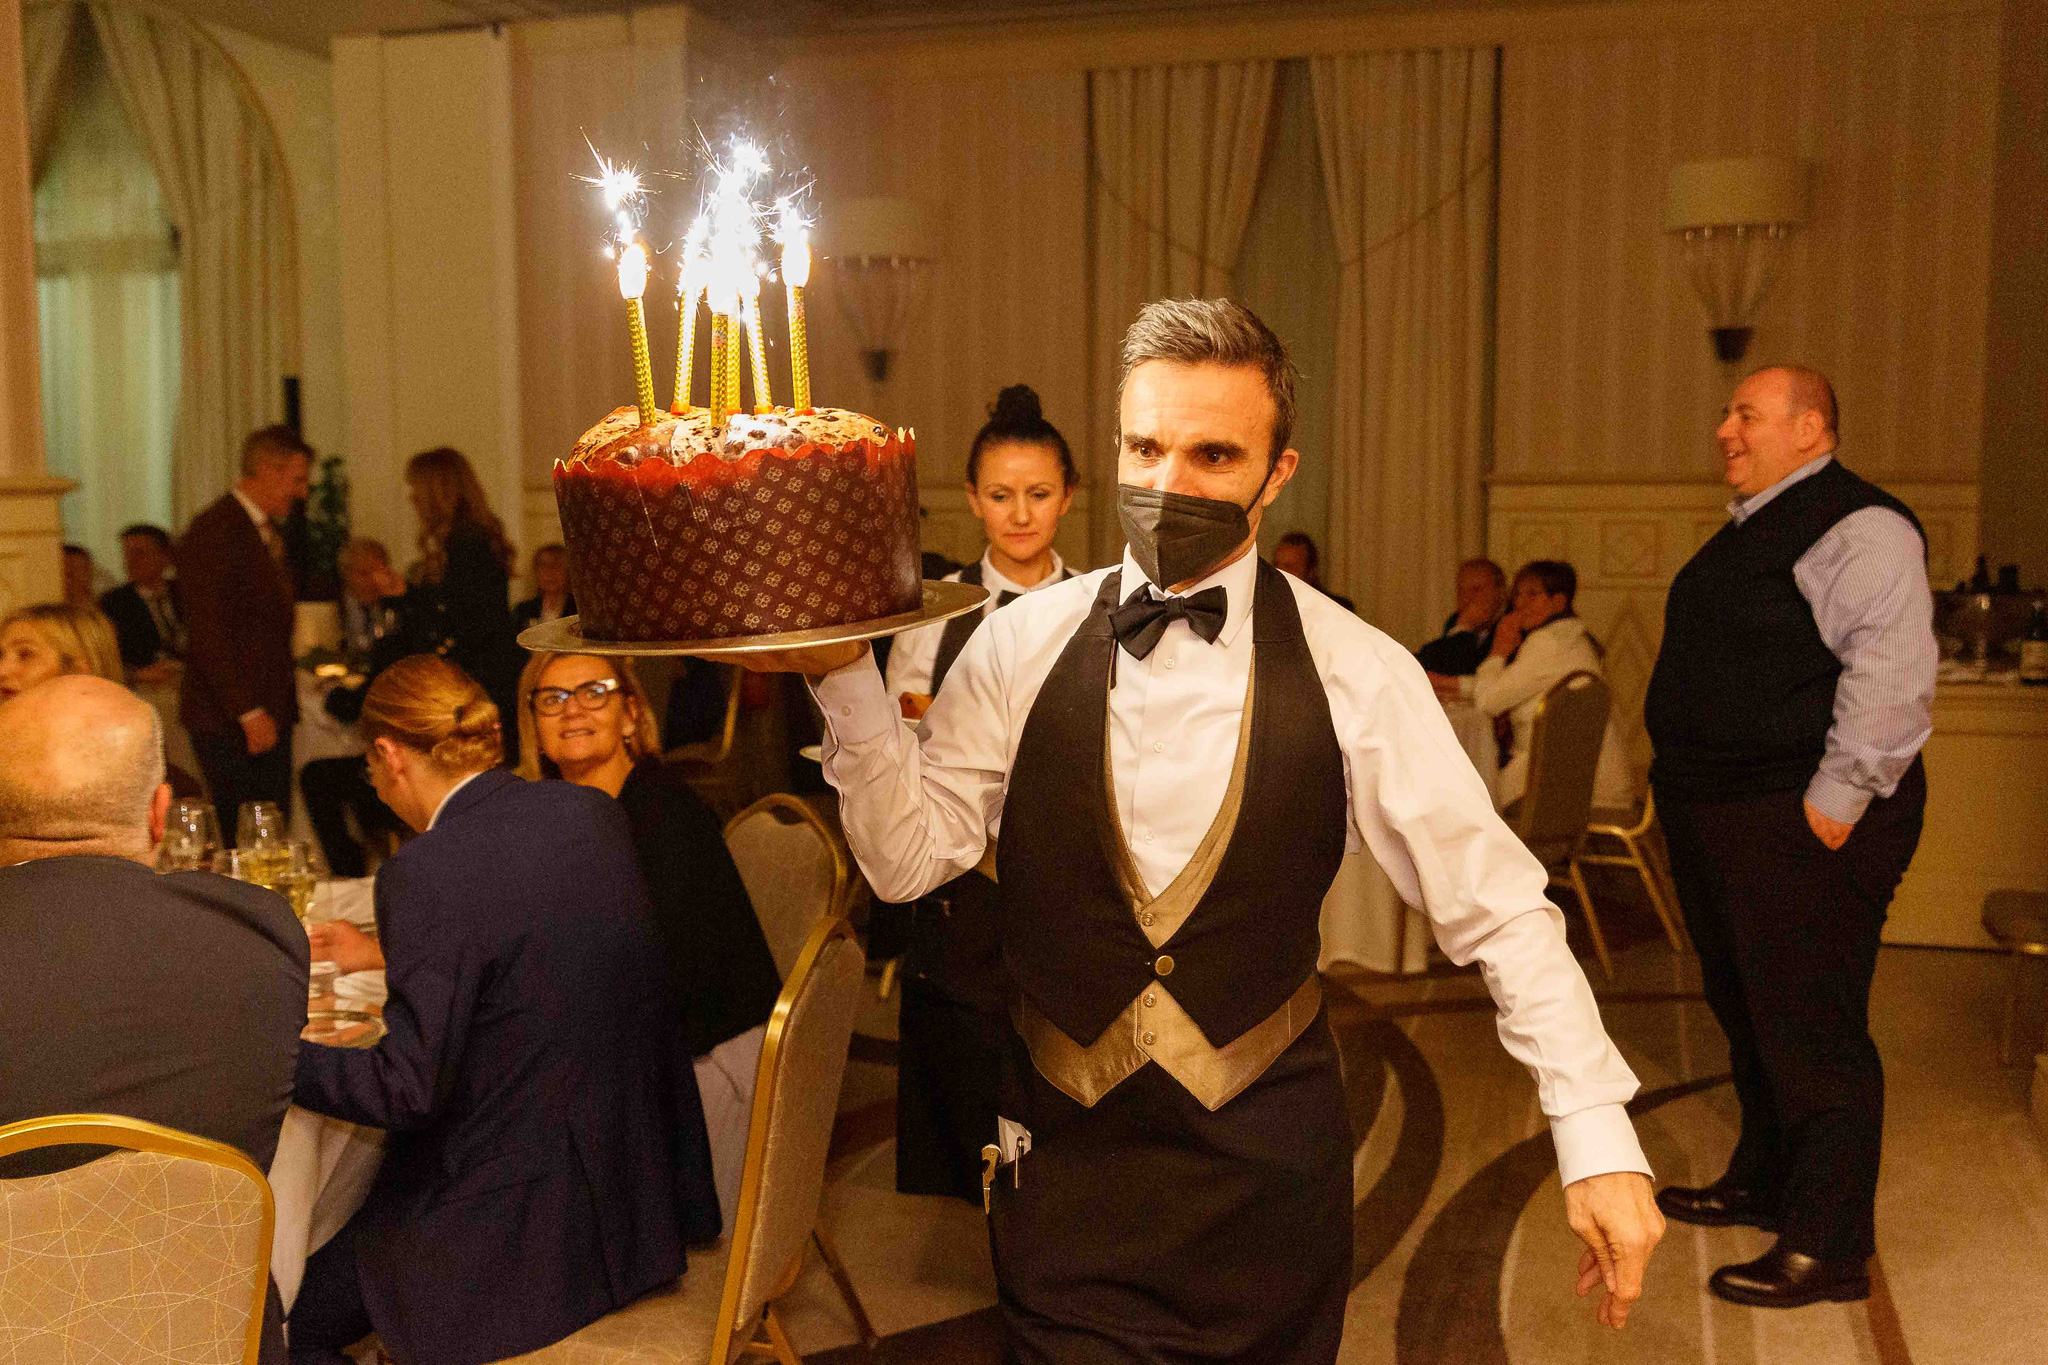 Cameriere dell'hotel principe di savoia porta una torta con le candeline